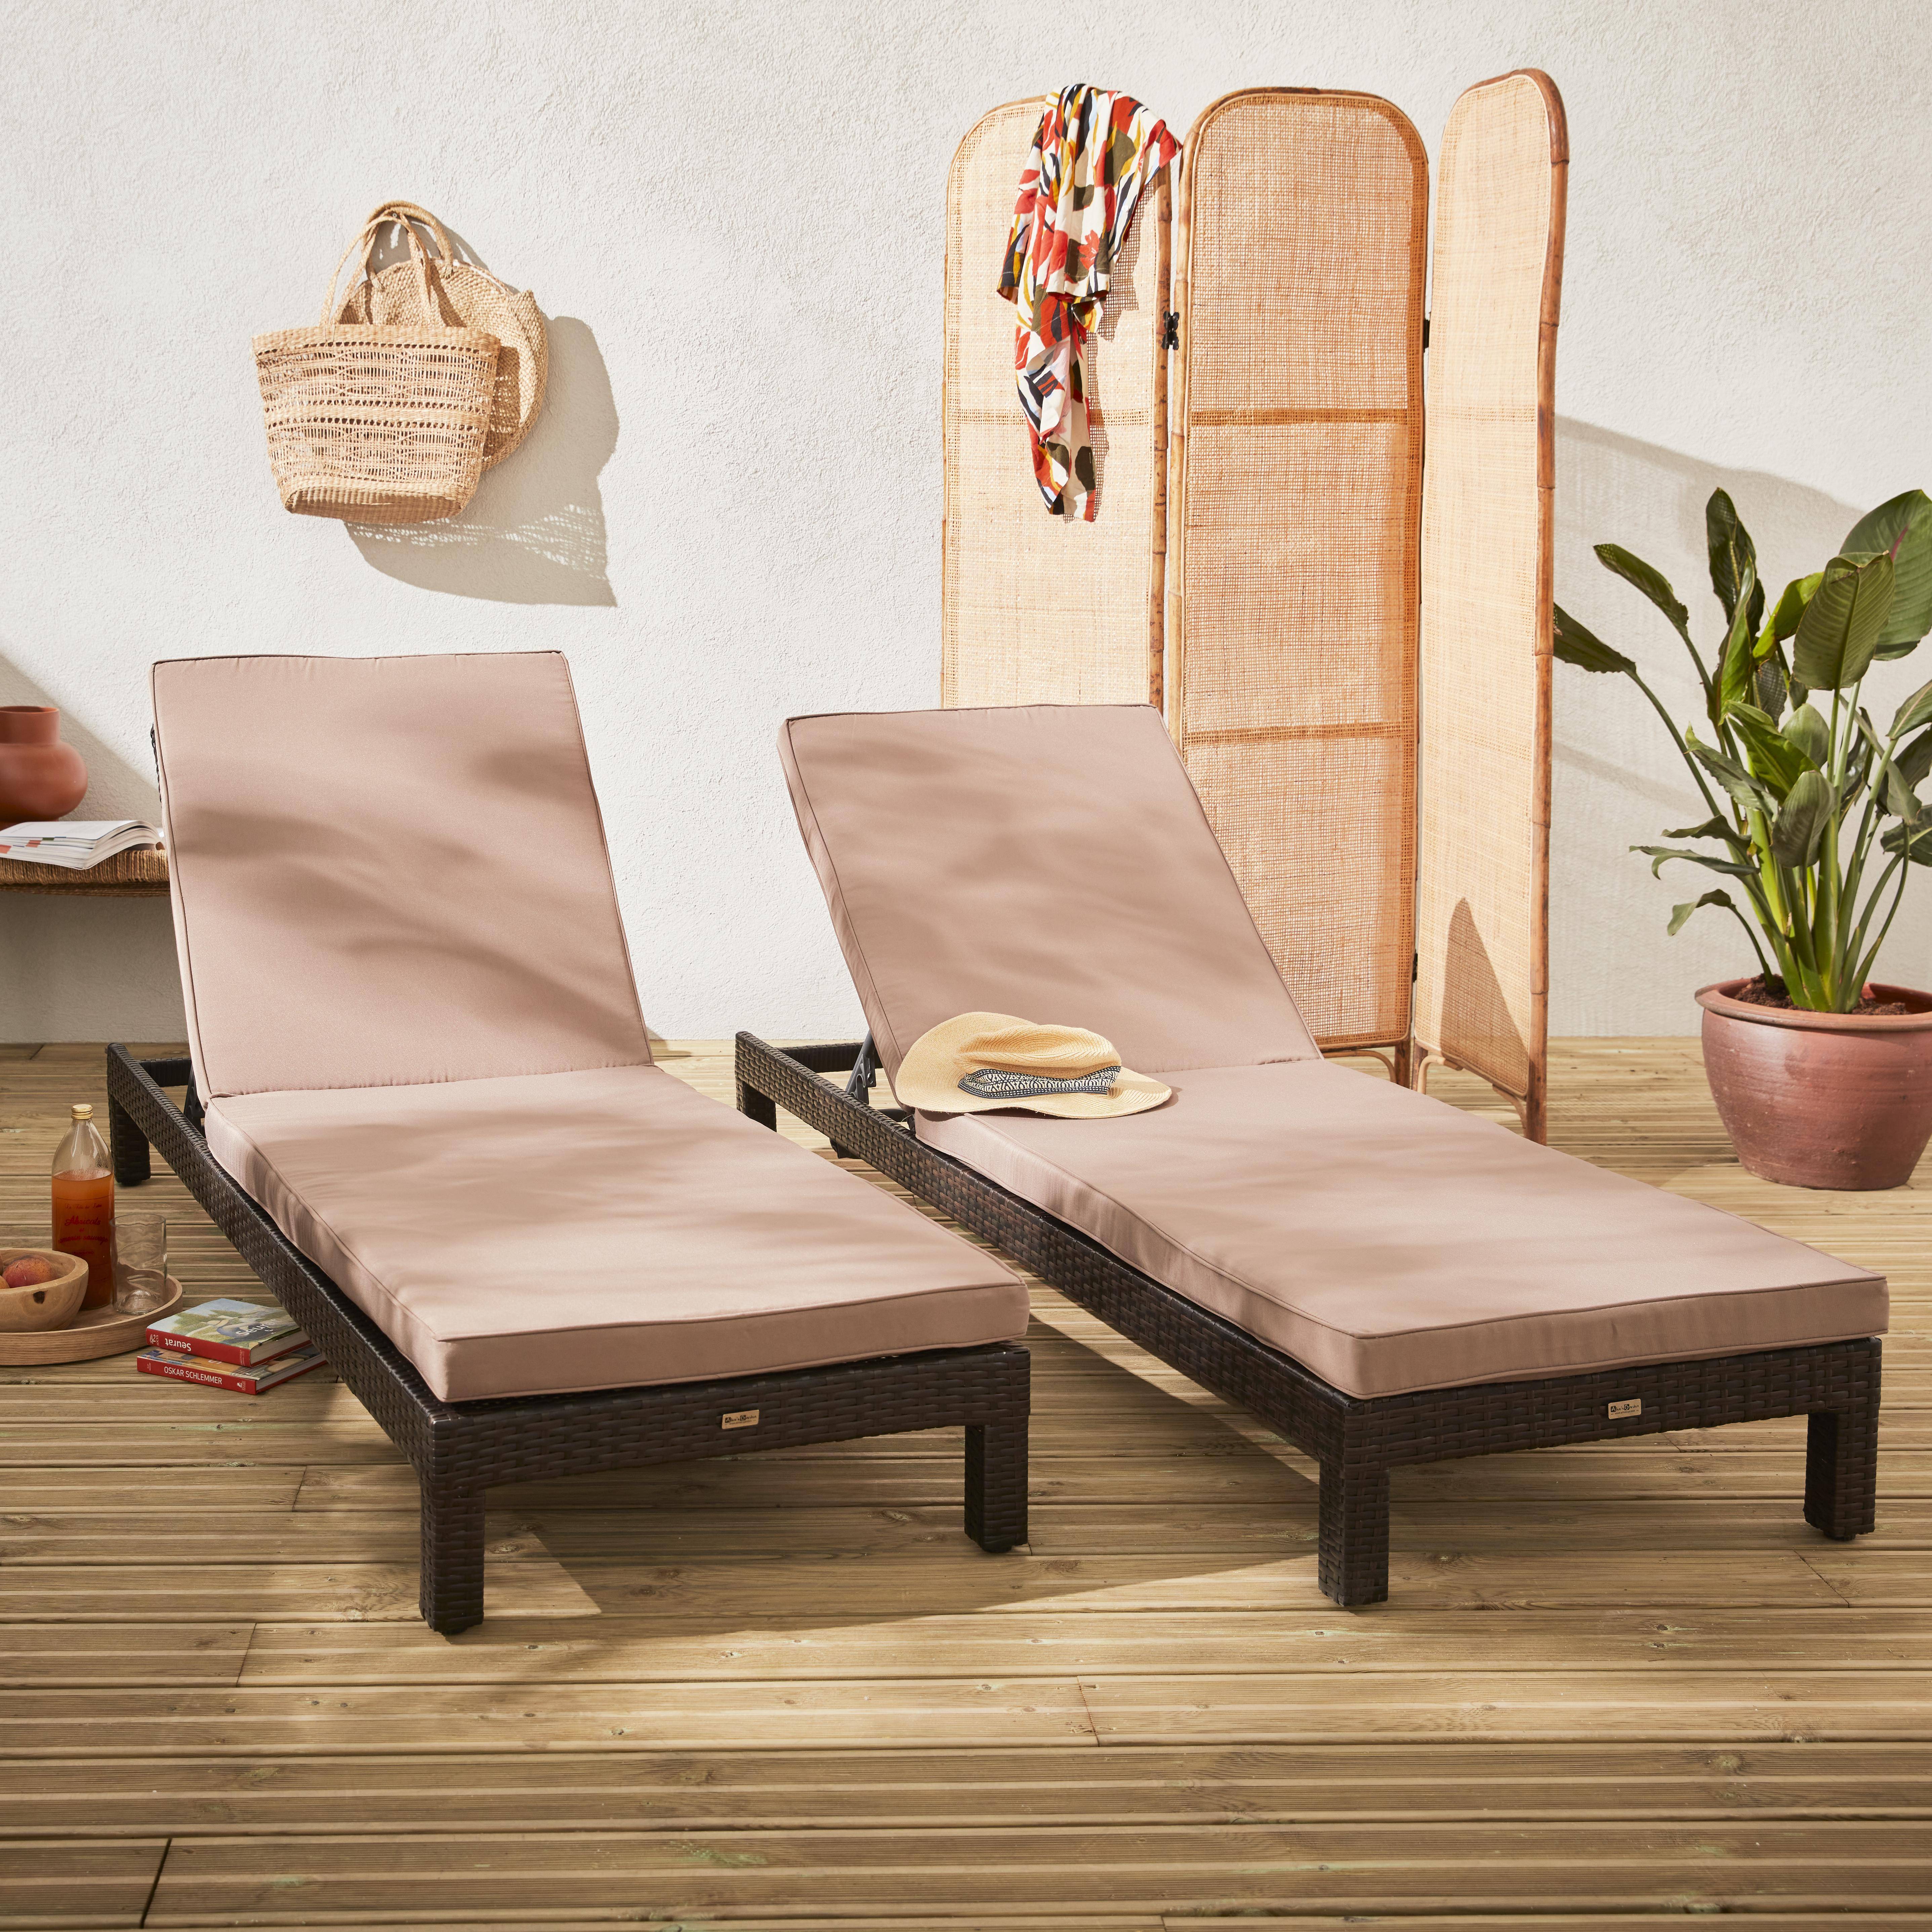 Set aus 2 Liegestühlen aus Rattan (Liegestuhl) - Pisa x2 - schokoladenfarben, braune Kissen Photo1